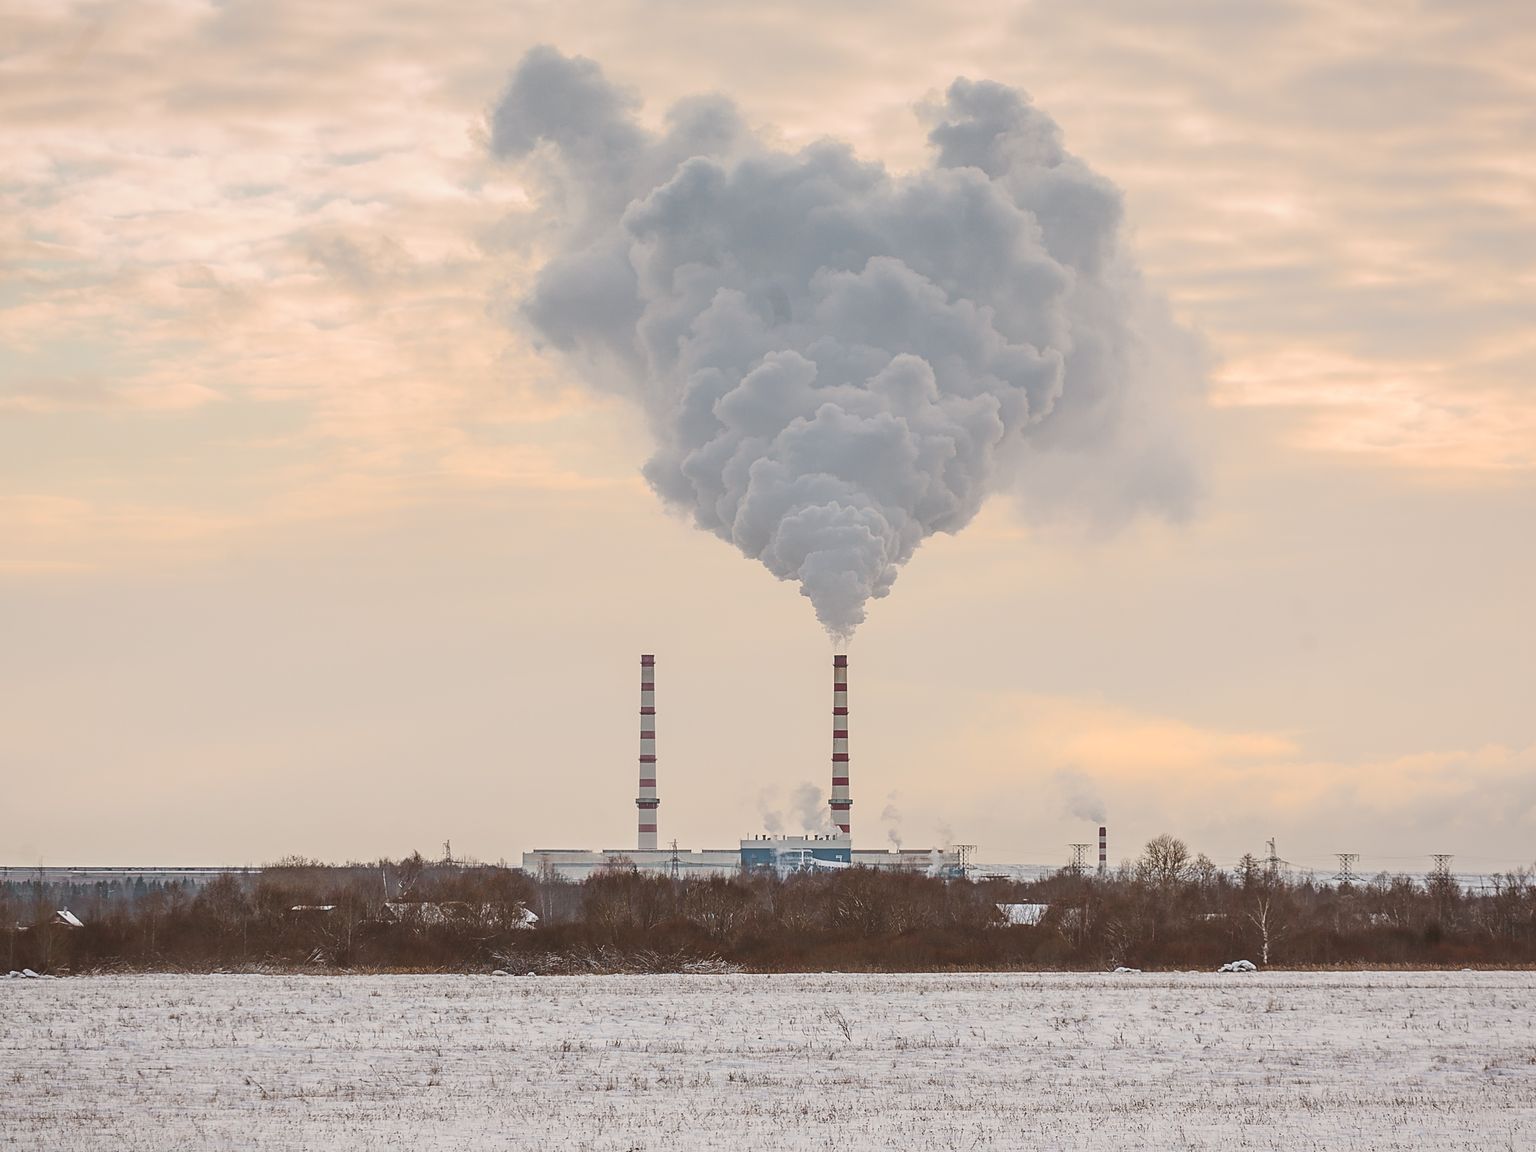 Тепло для Нарвы вырабатывается на Балтийской электростанции "Enefit Power" и расположенной рядом с ней газовой котельной.